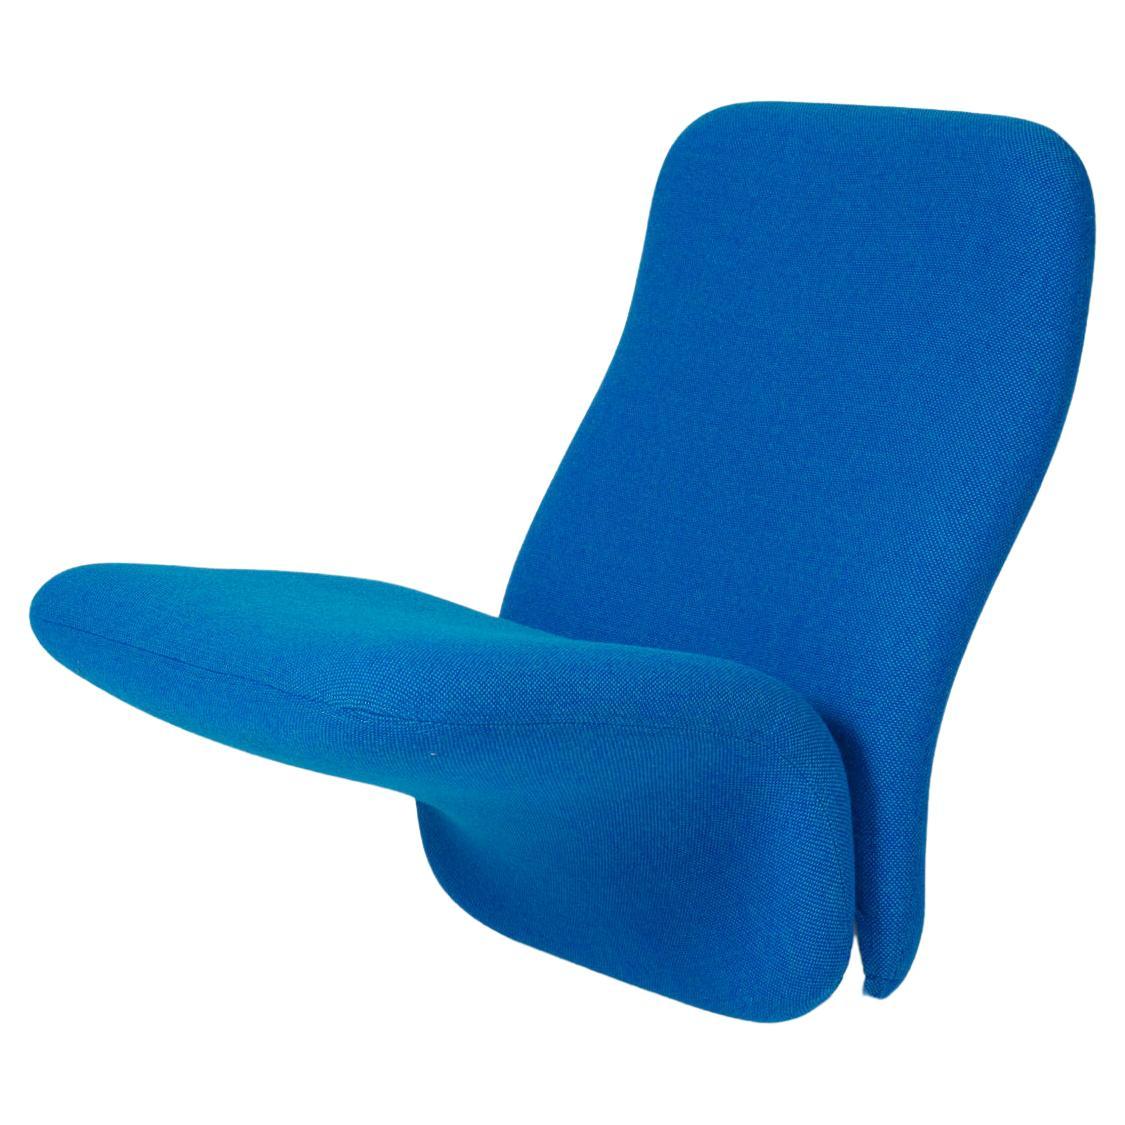 Pierre Paulin F780 armchair For Sale